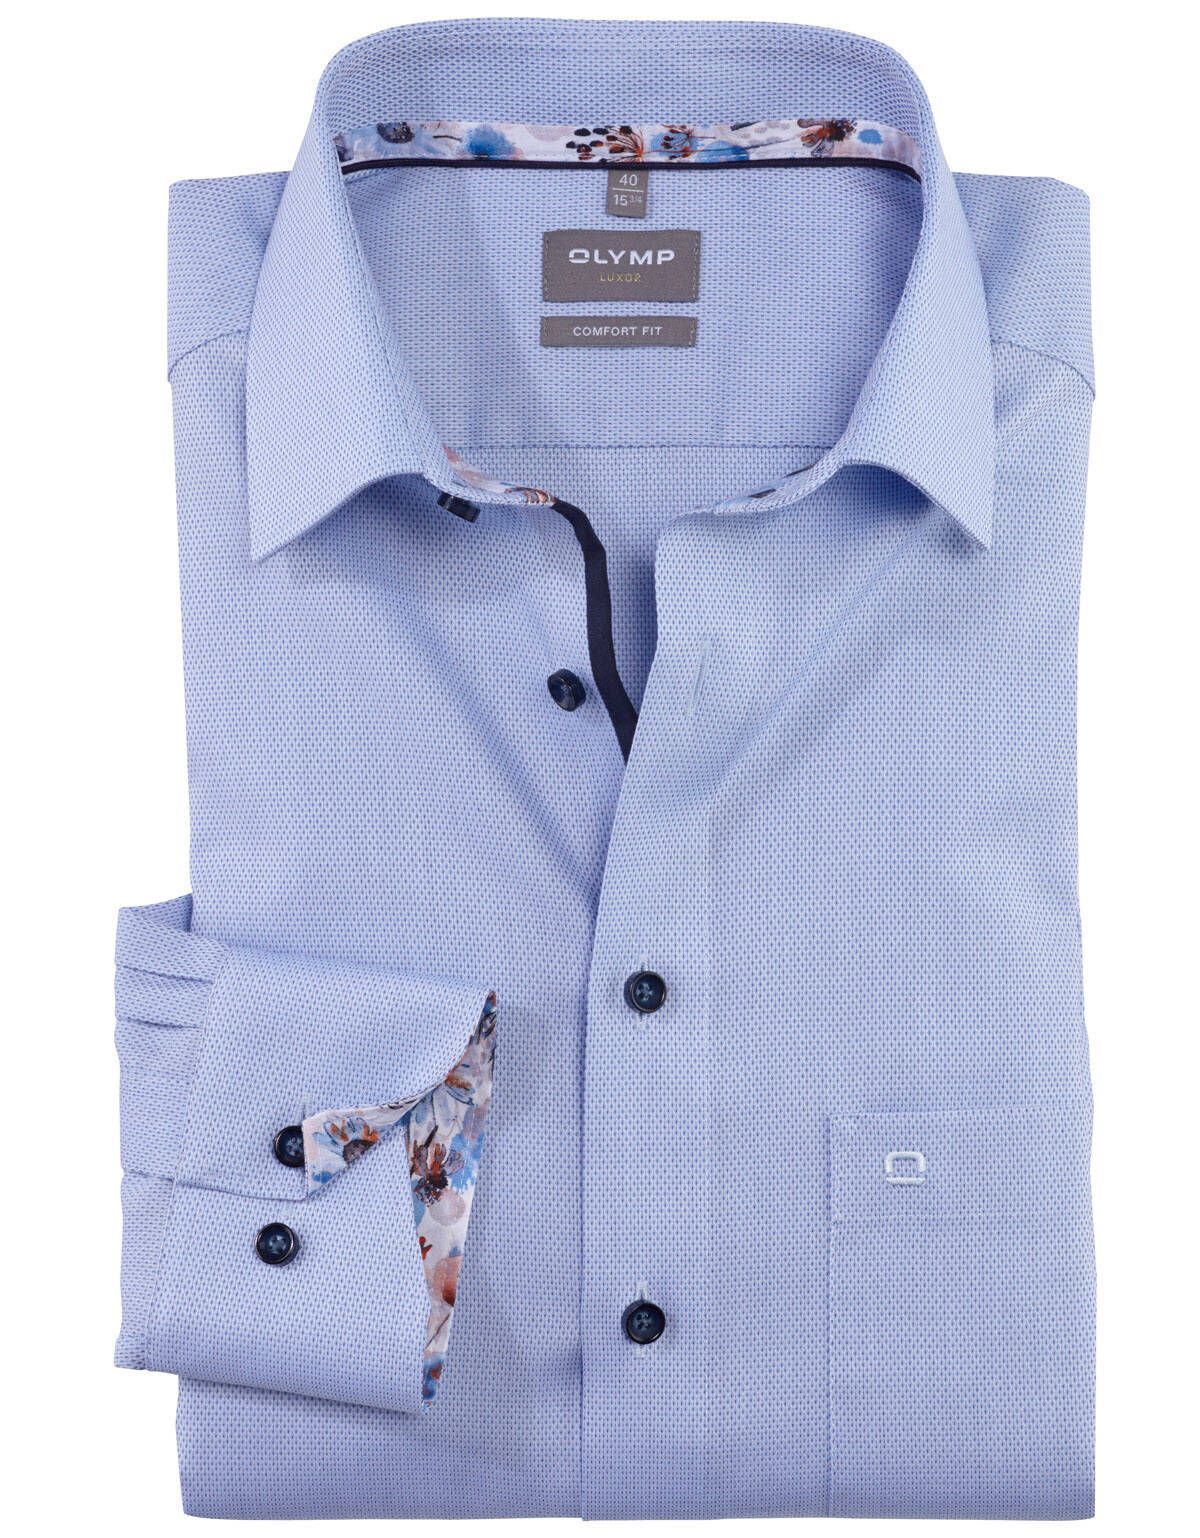 Рубашка классическая мужская OLYMP Luxor, прямая[Голубой]